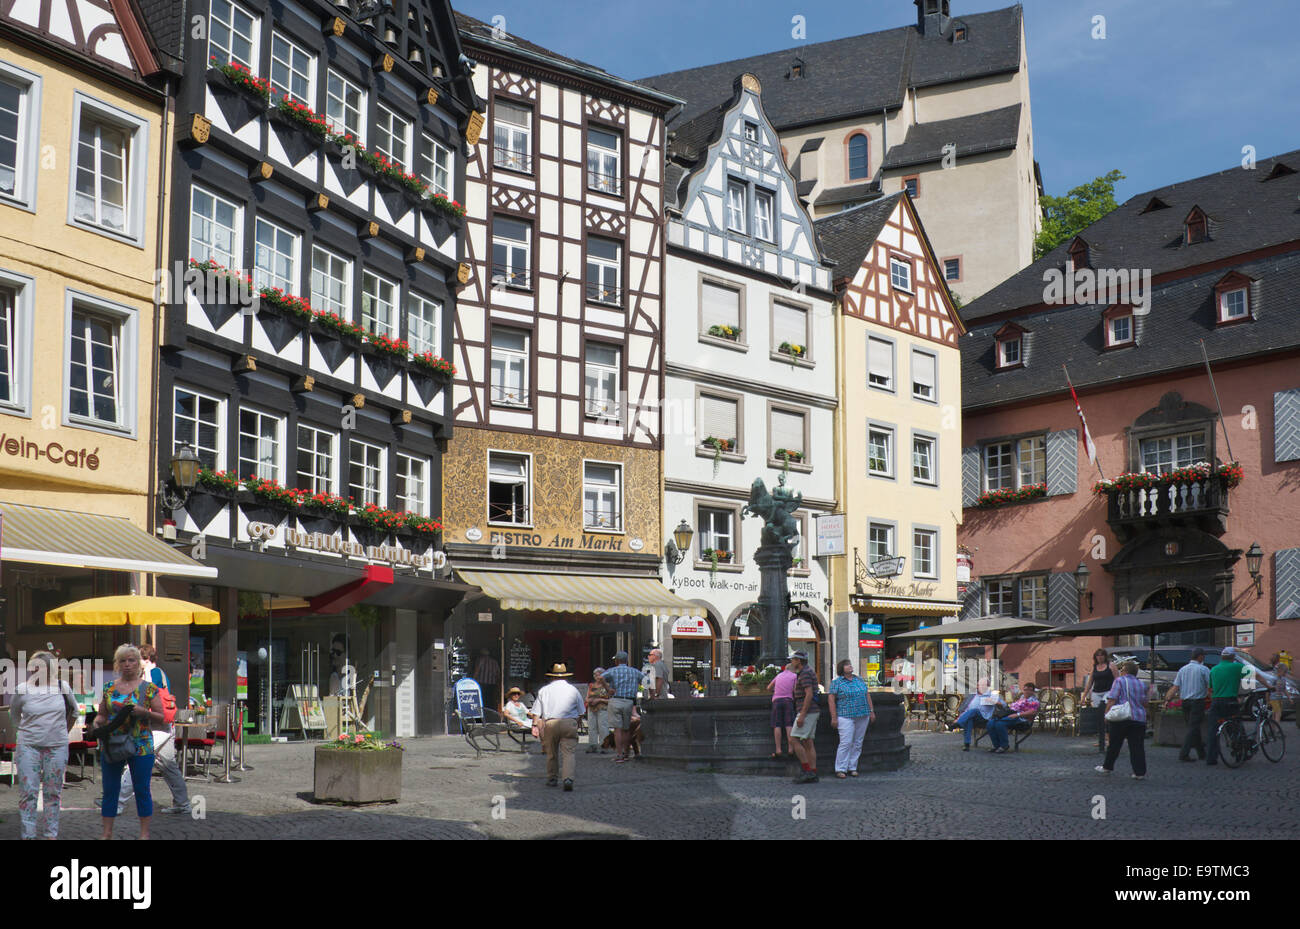 Markplatz Cochem Moselle Valley Germany Stock Photo